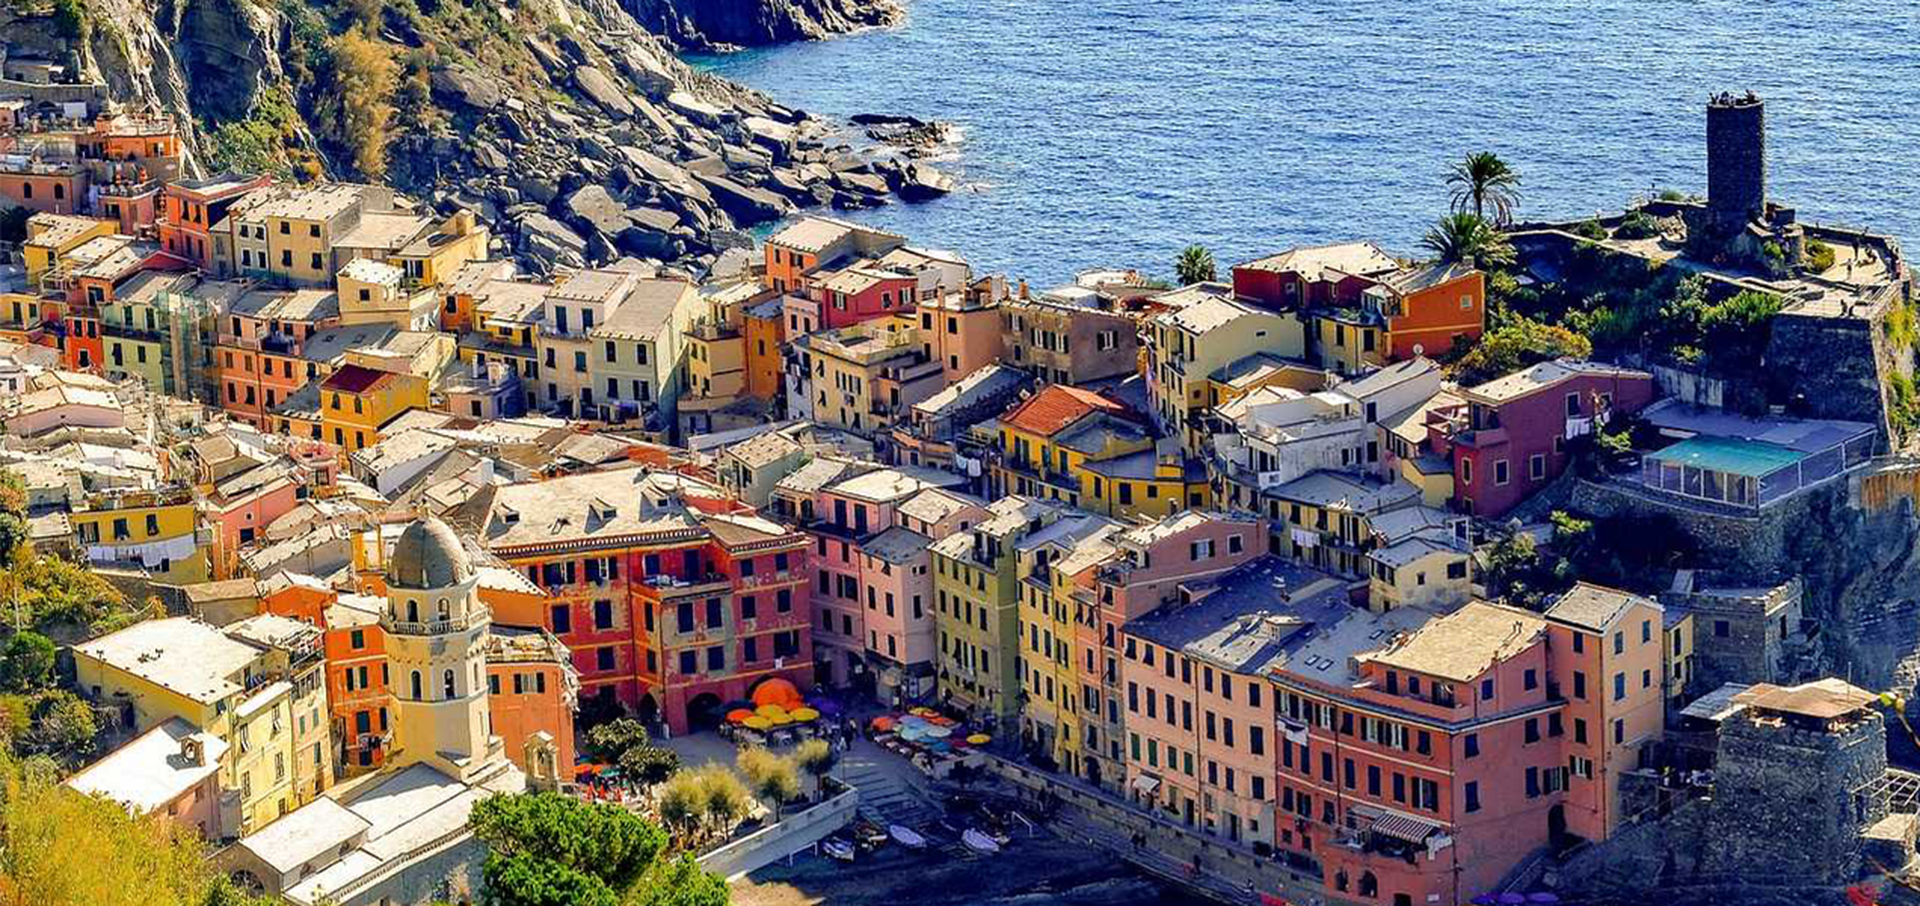 Vue sur le joli village coloré des Cinque Terre